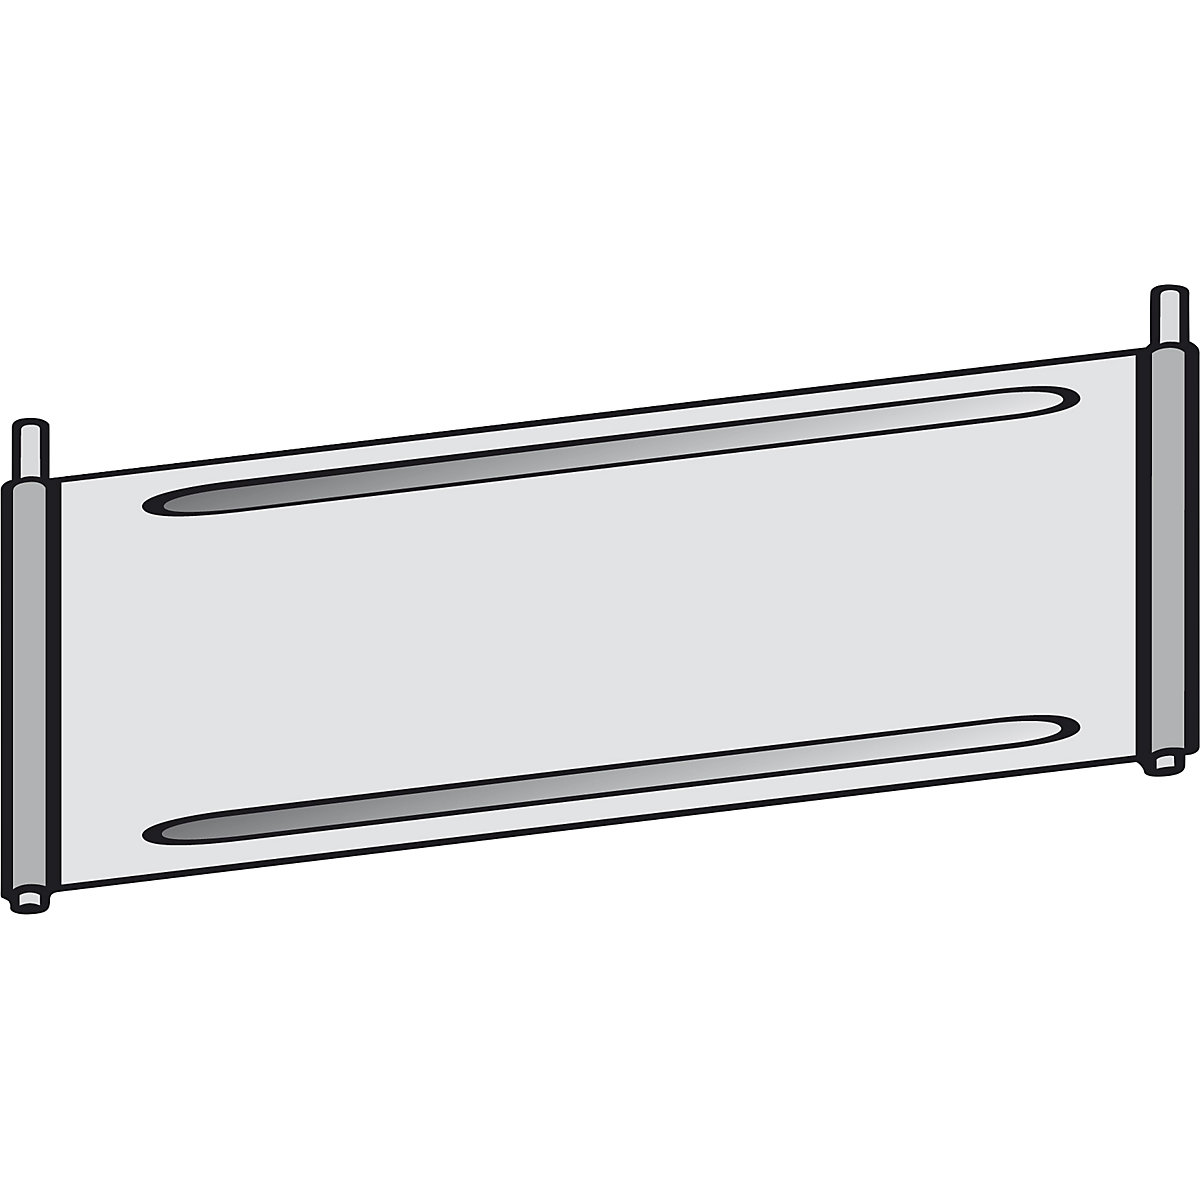 Trennblech für Fächer-Regal hofe, verzinkt, für Fachboden, BxT 1000 x 600 mm-3